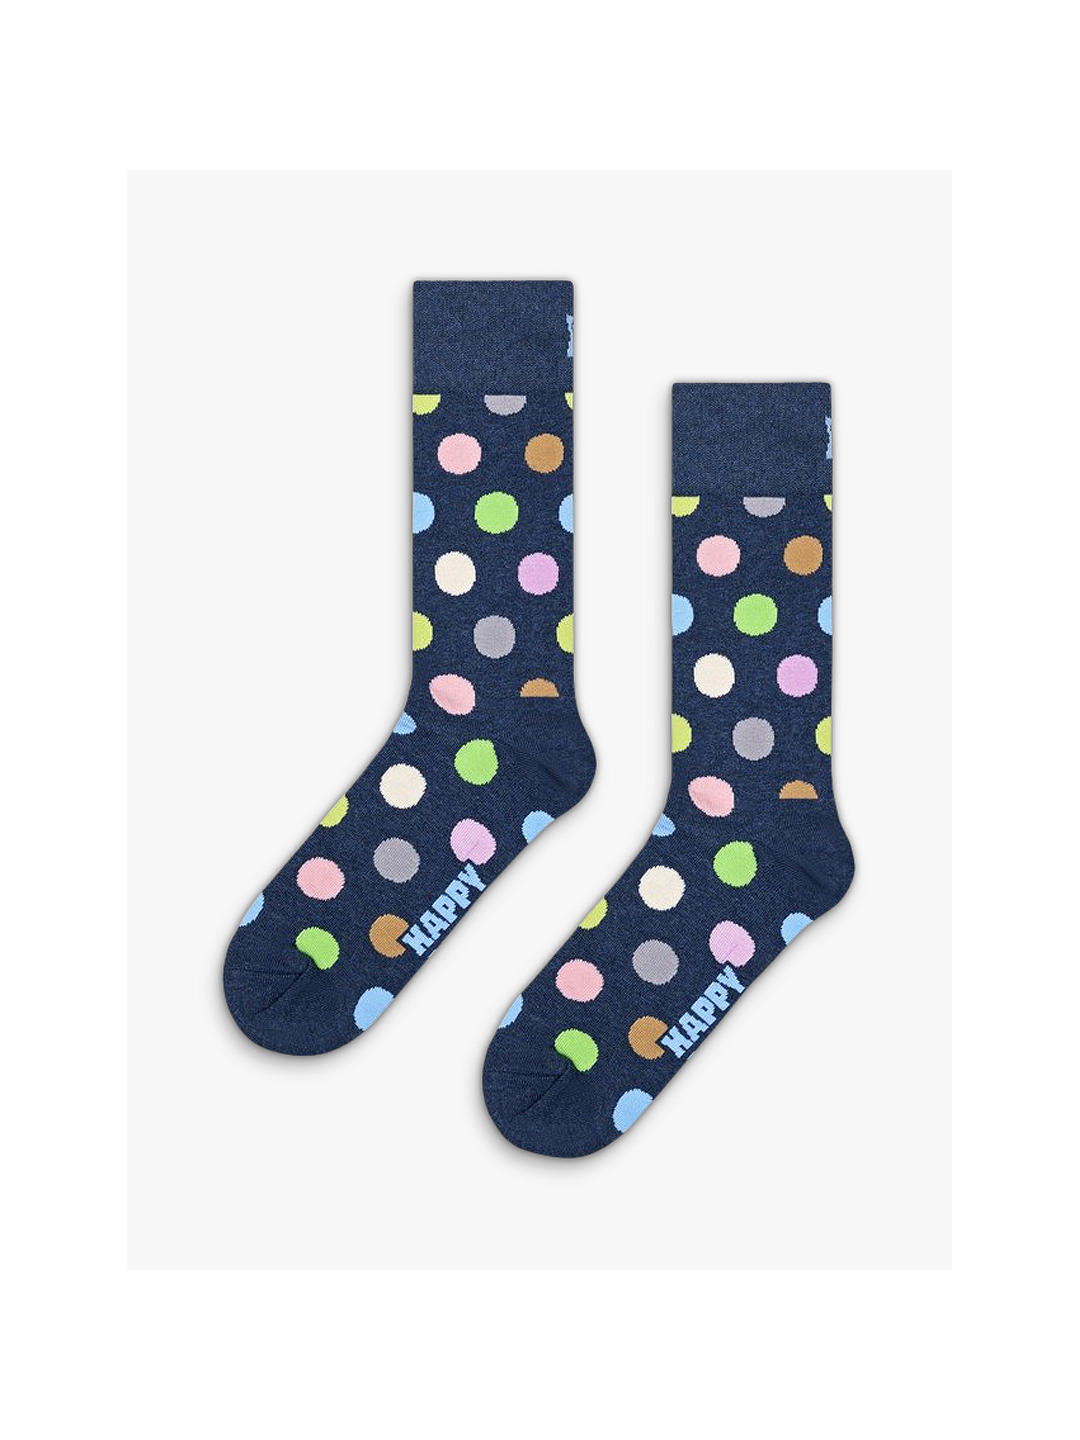 Happy Socks Big Dot Socks, One Size, Navy/Multi